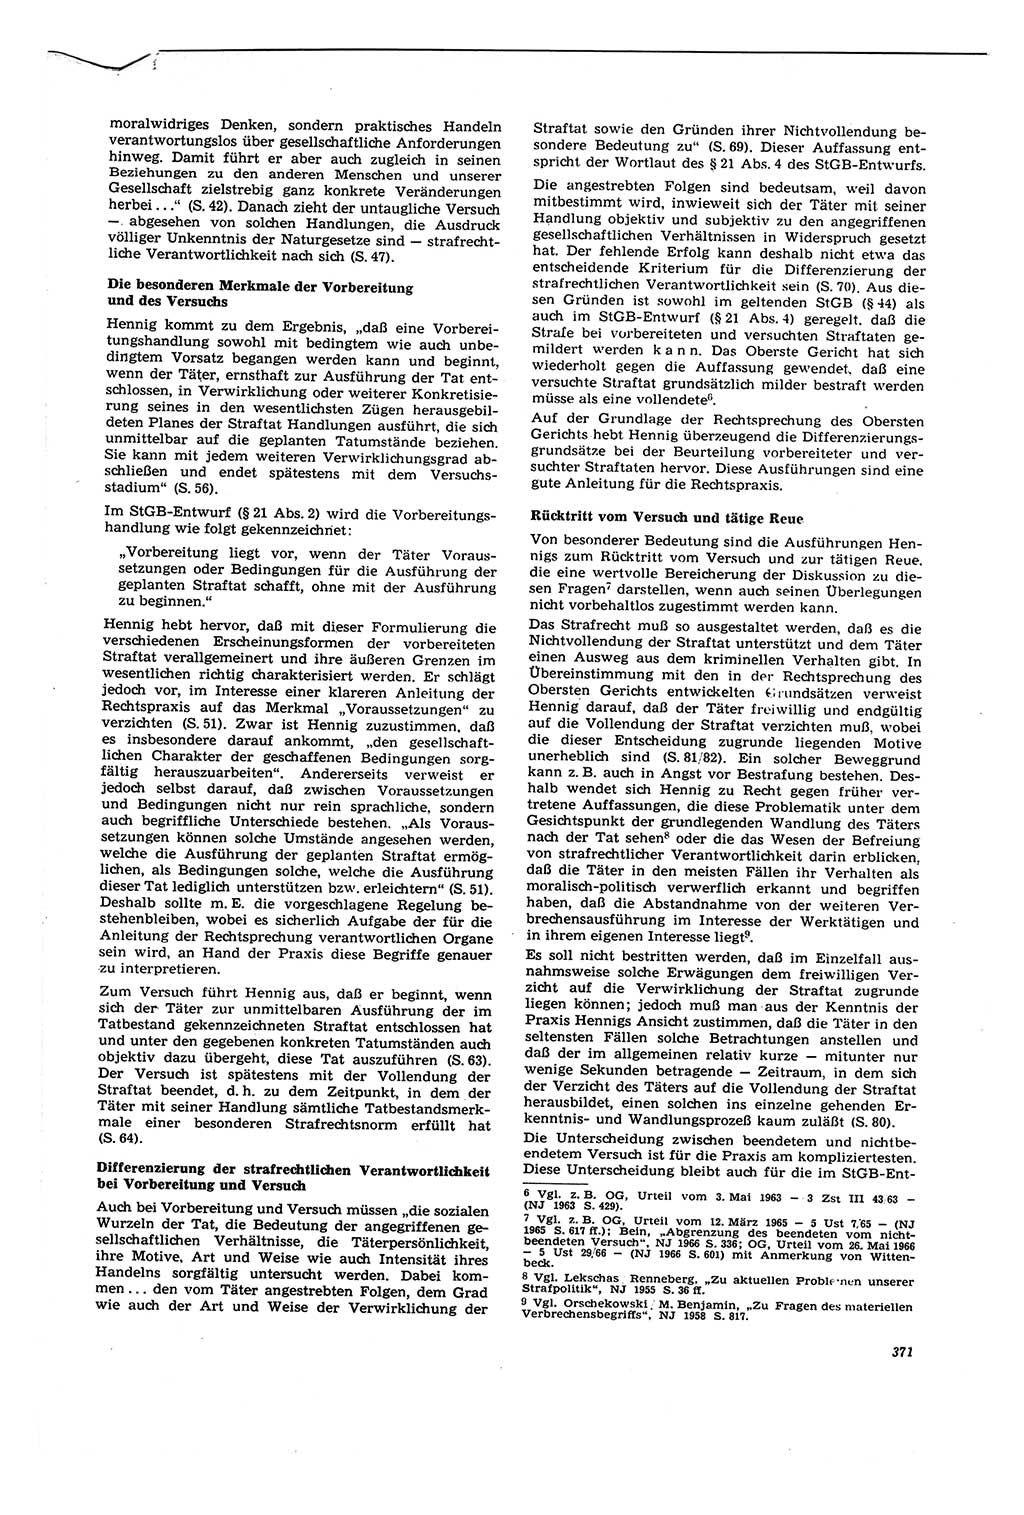 Neue Justiz (NJ), Zeitschrift für Recht und Rechtswissenschaft [Deutsche Demokratische Republik (DDR)], 21. Jahrgang 1967, Seite 371 (NJ DDR 1967, S. 371)